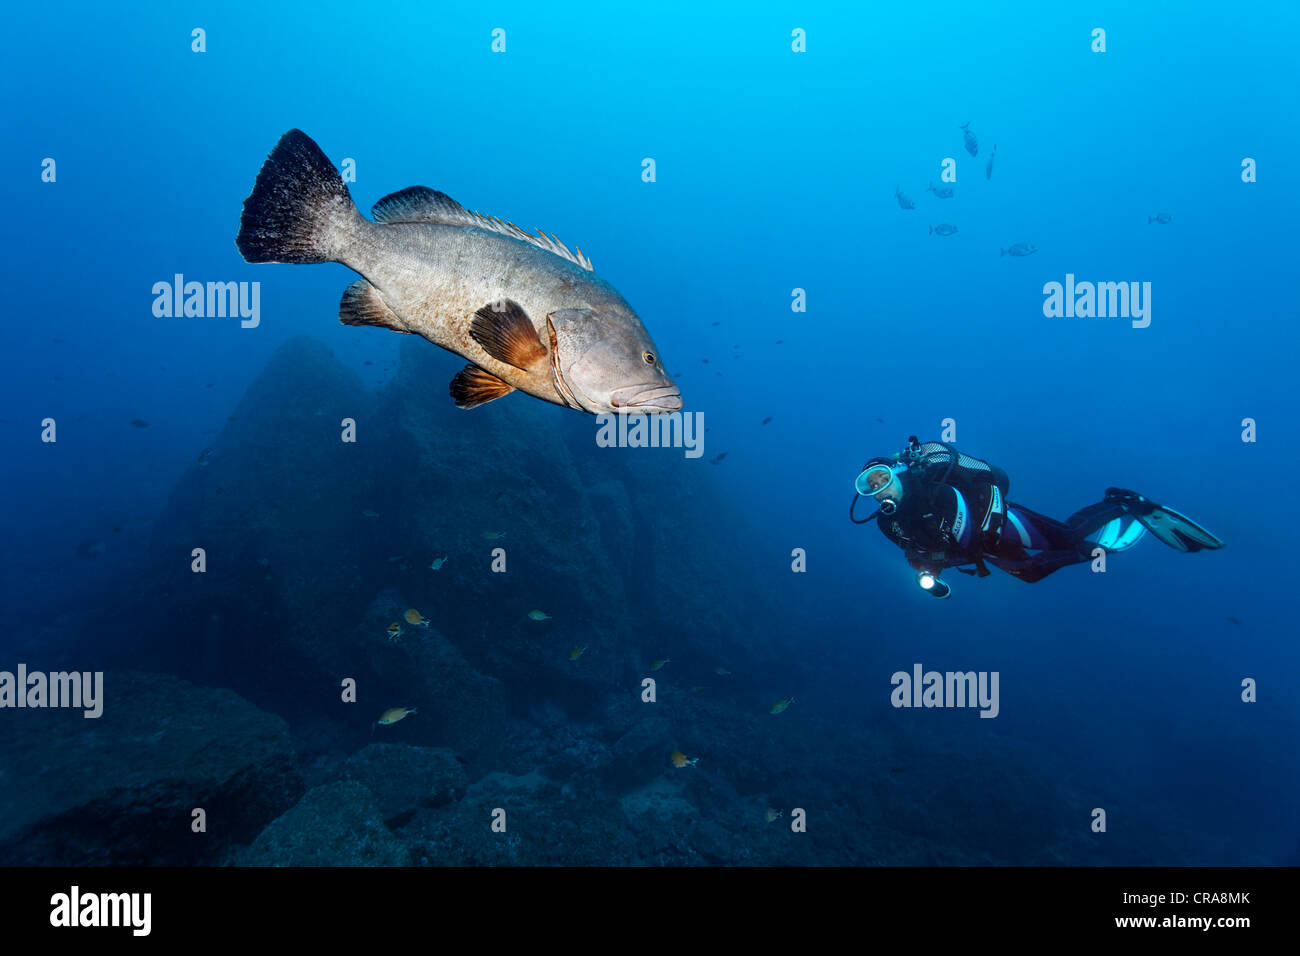 L'observation des plongeurs Mérou Epinephelus marginatus (Sombre) dans l'eau bleue, Madeira, Portugal, Europe, Atlantique Banque D'Images